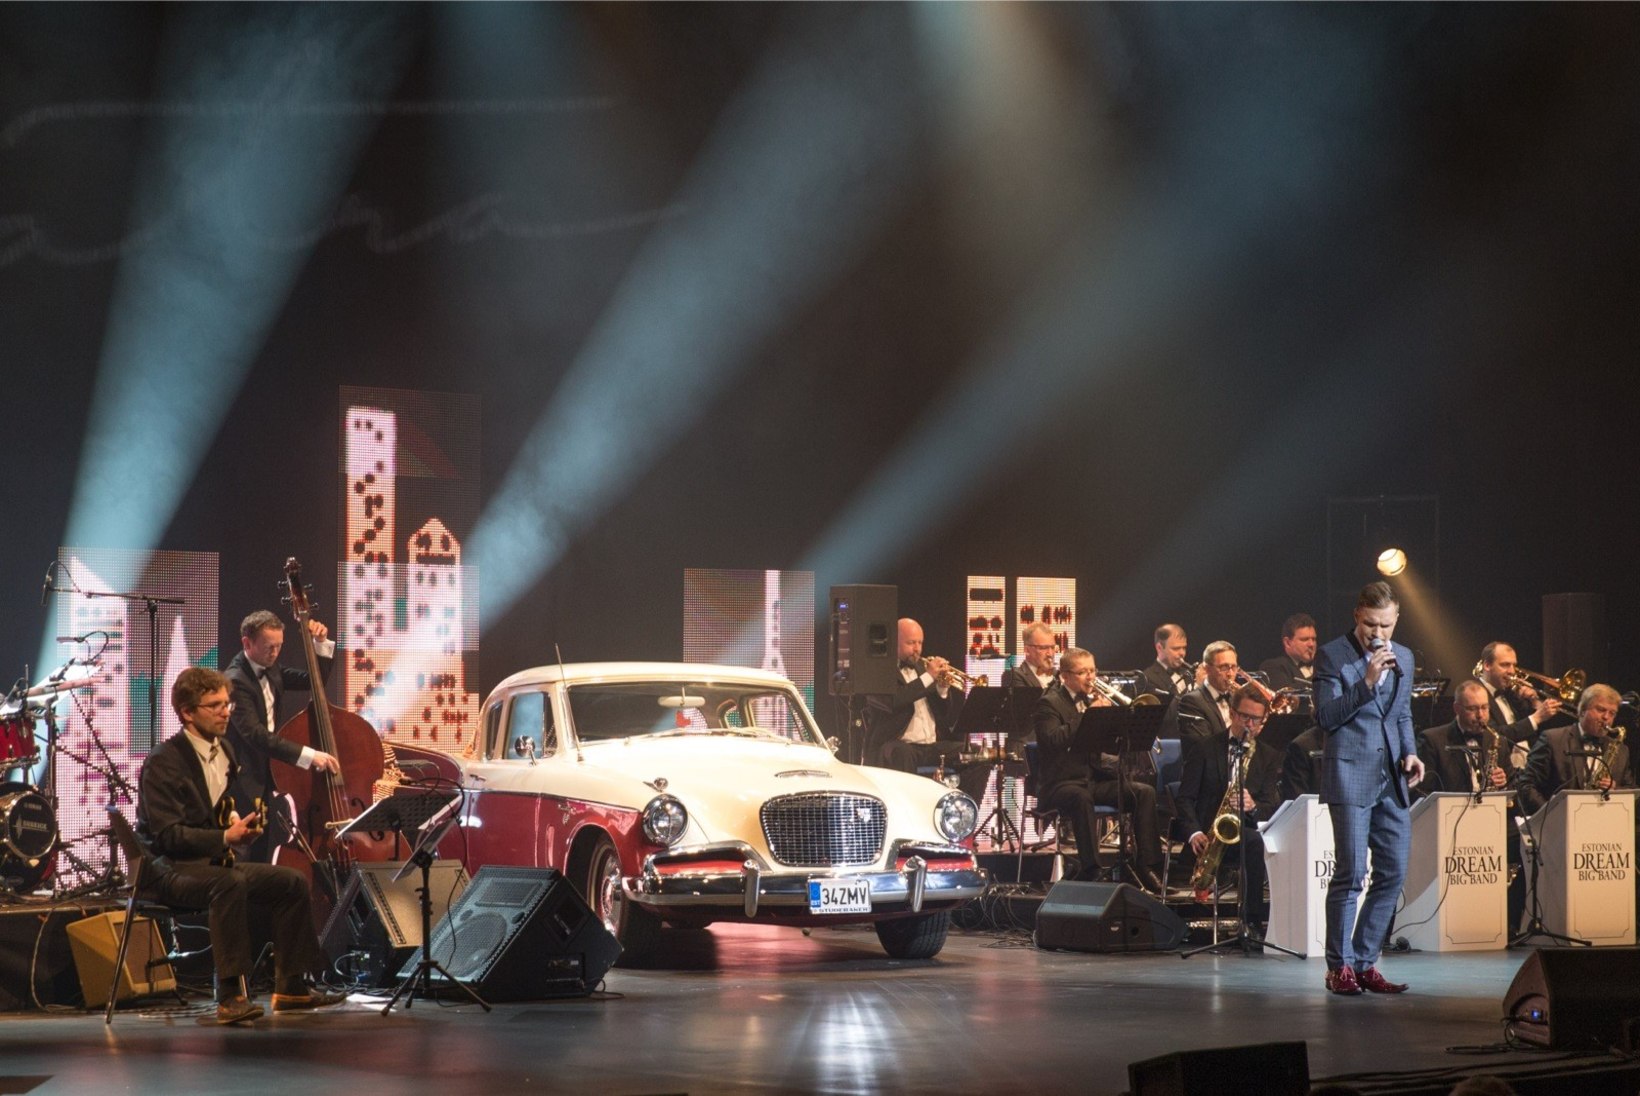 GALERII | Ott Lepland ja Kadri Voorand pälvisid Sinatra kontserdil publiku vaimustatud ovatsioone